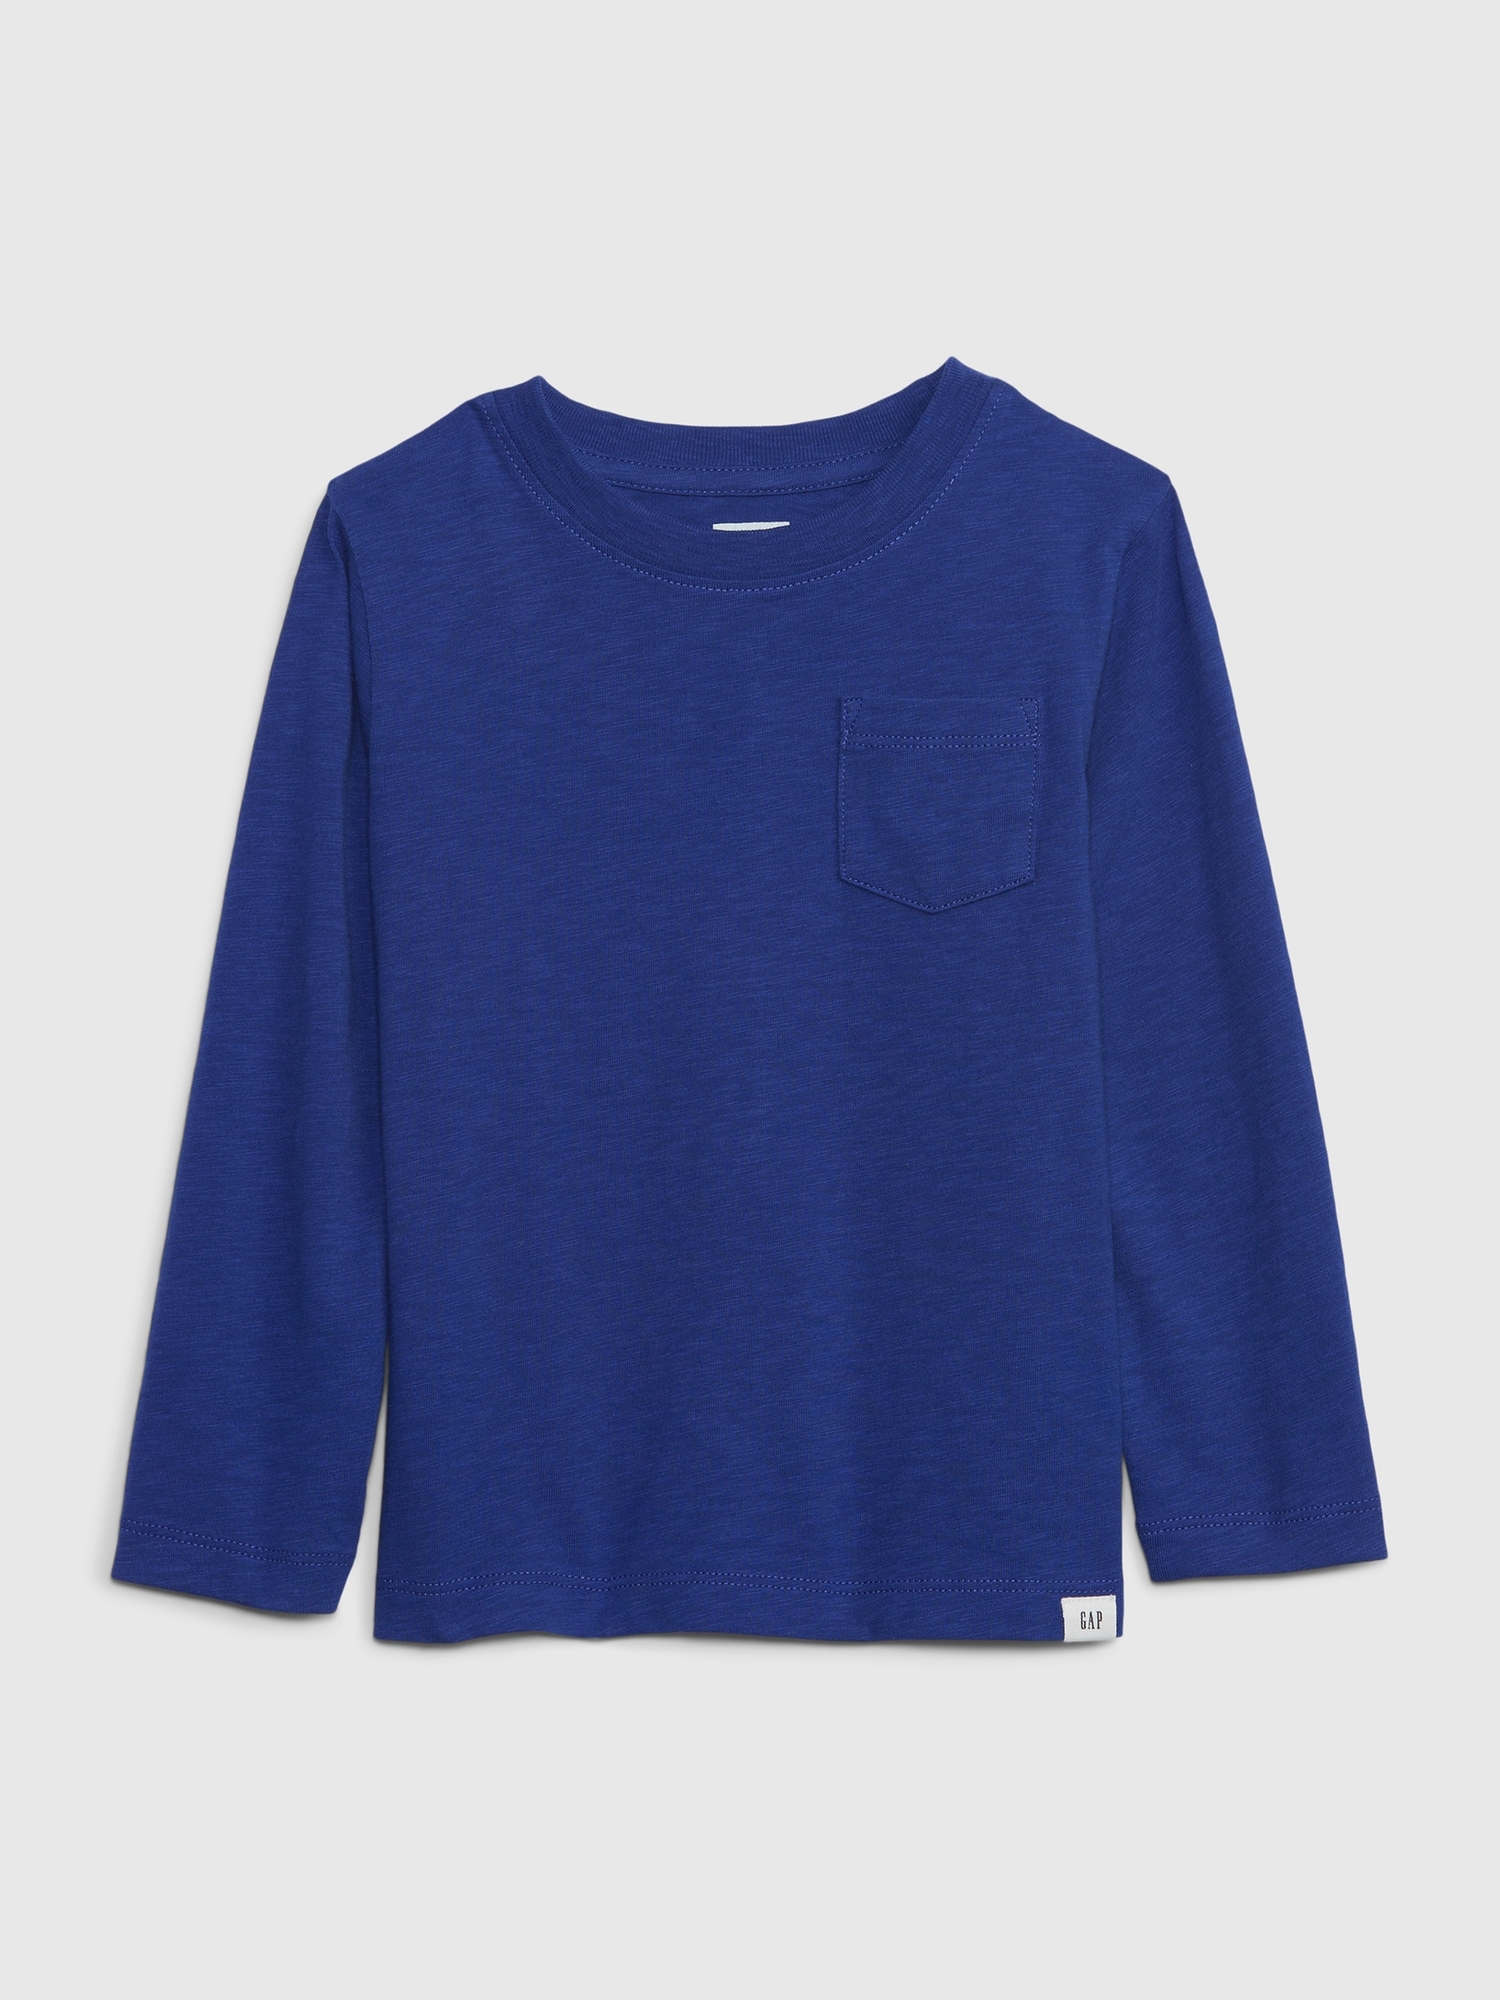 Gap Toddler Organic Cotton Mix and Match T-Shirt